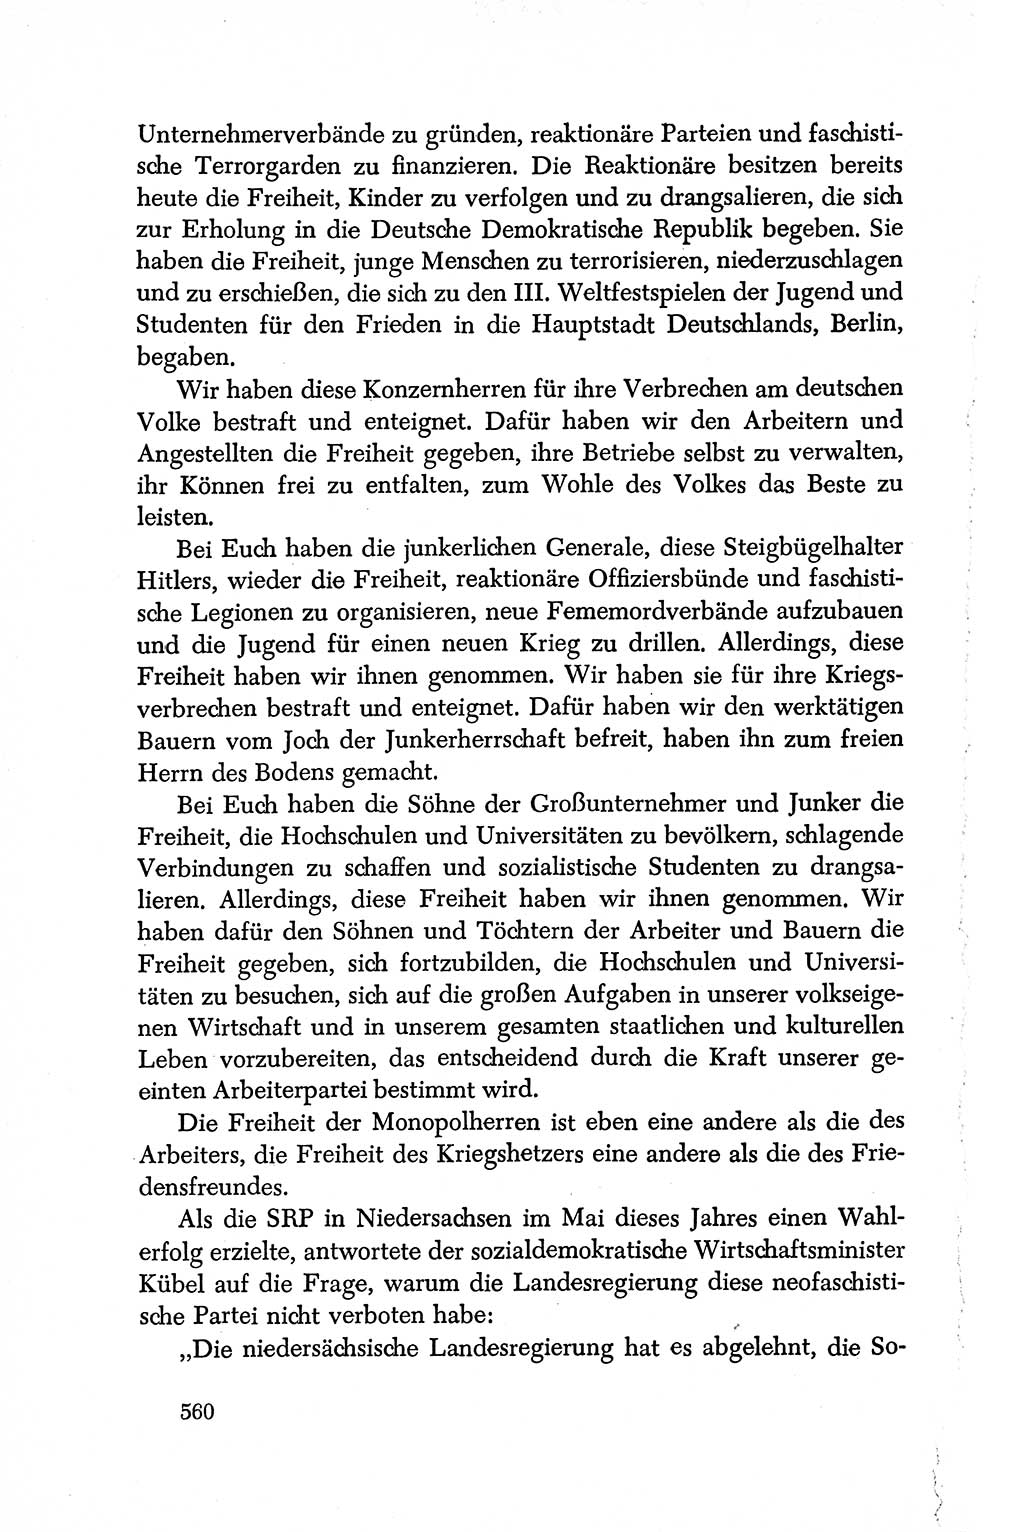 Dokumente der Sozialistischen Einheitspartei Deutschlands (SED) [Deutsche Demokratische Republik (DDR)] 1950-1952, Seite 560 (Dok. SED DDR 1950-1952, S. 560)